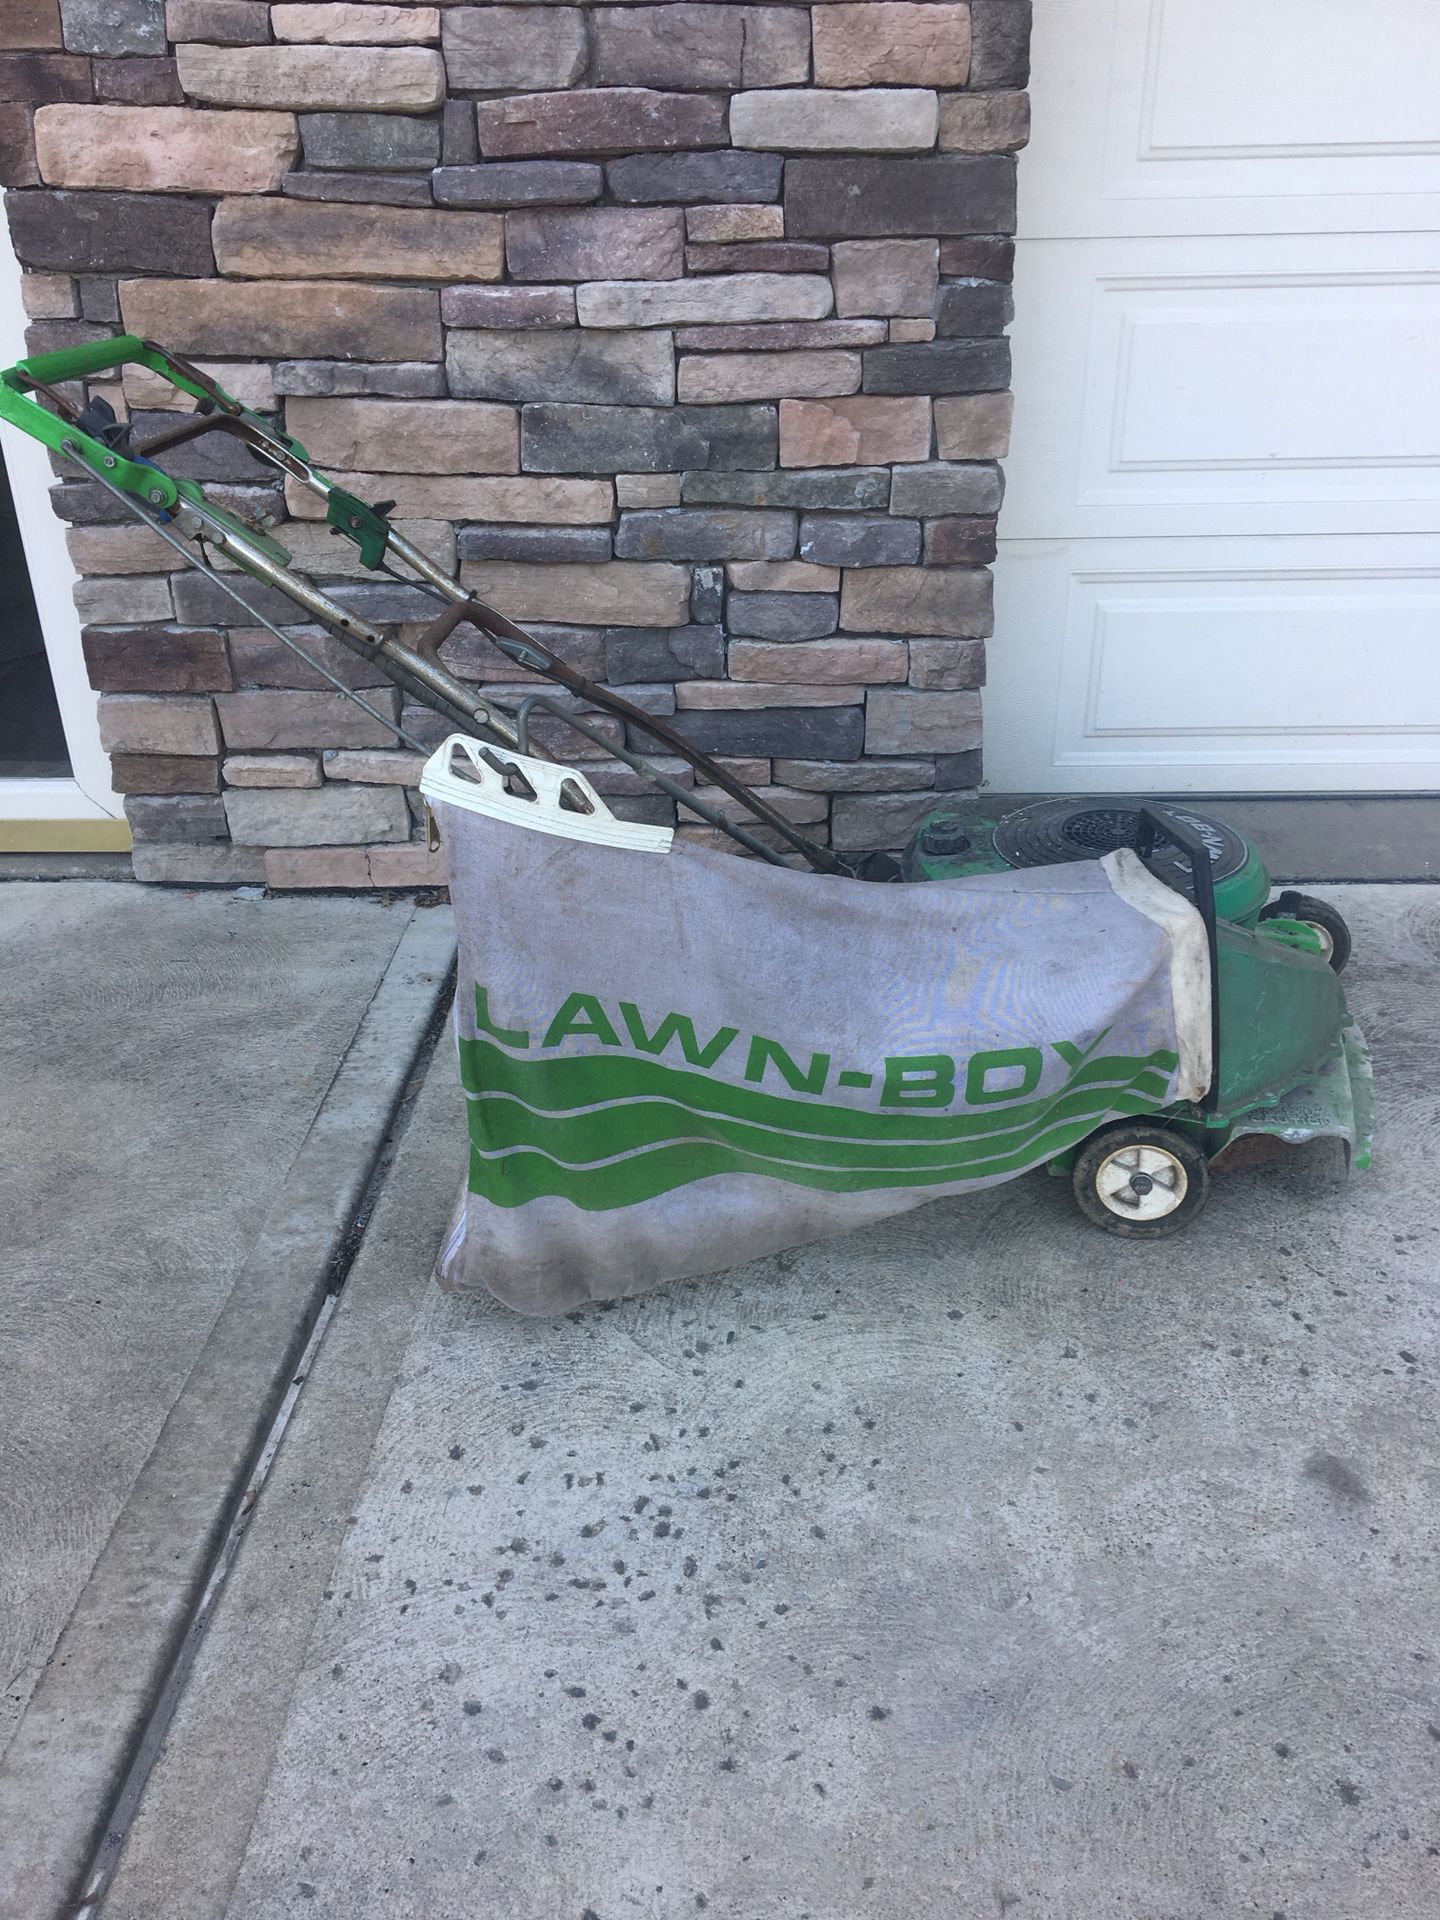 Lawn-Boy push mower